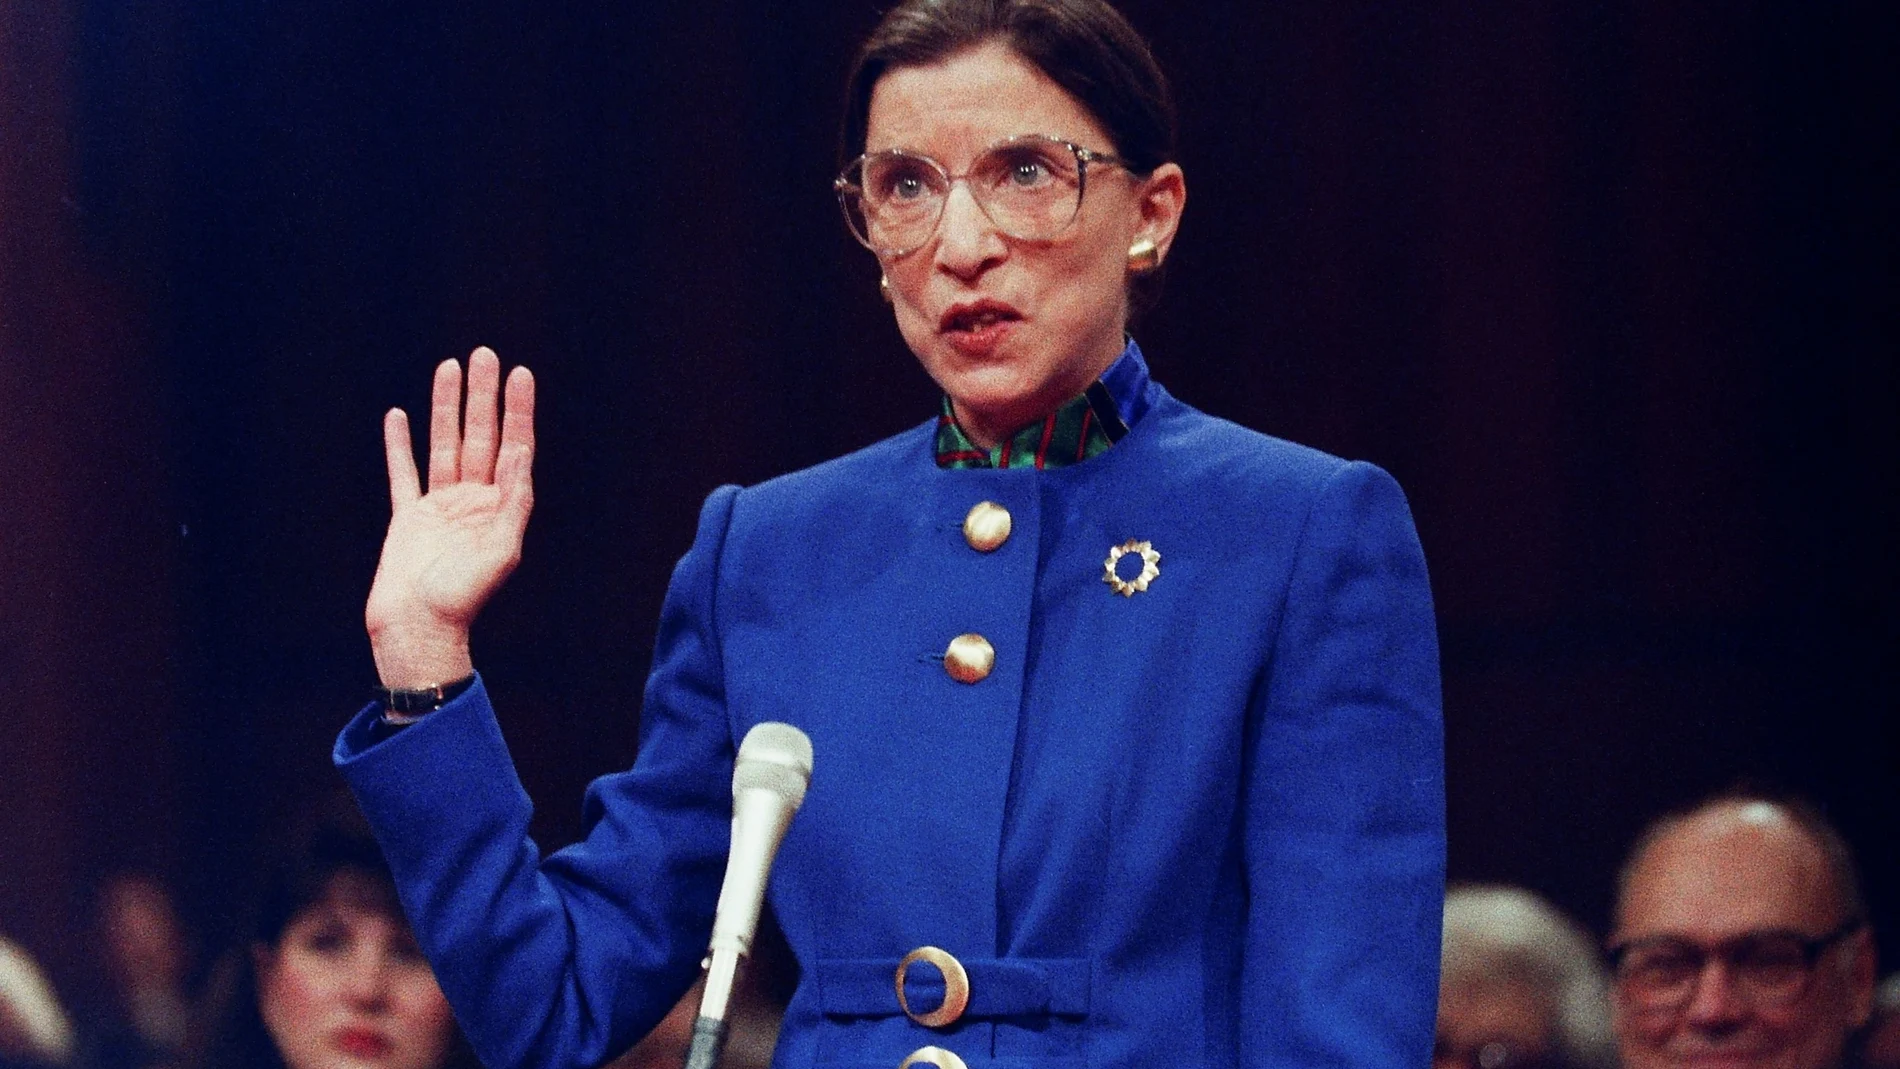 La juexa Ruth Bader Ginsburg, en 1993, el día que juró su cargo ante el Supremo